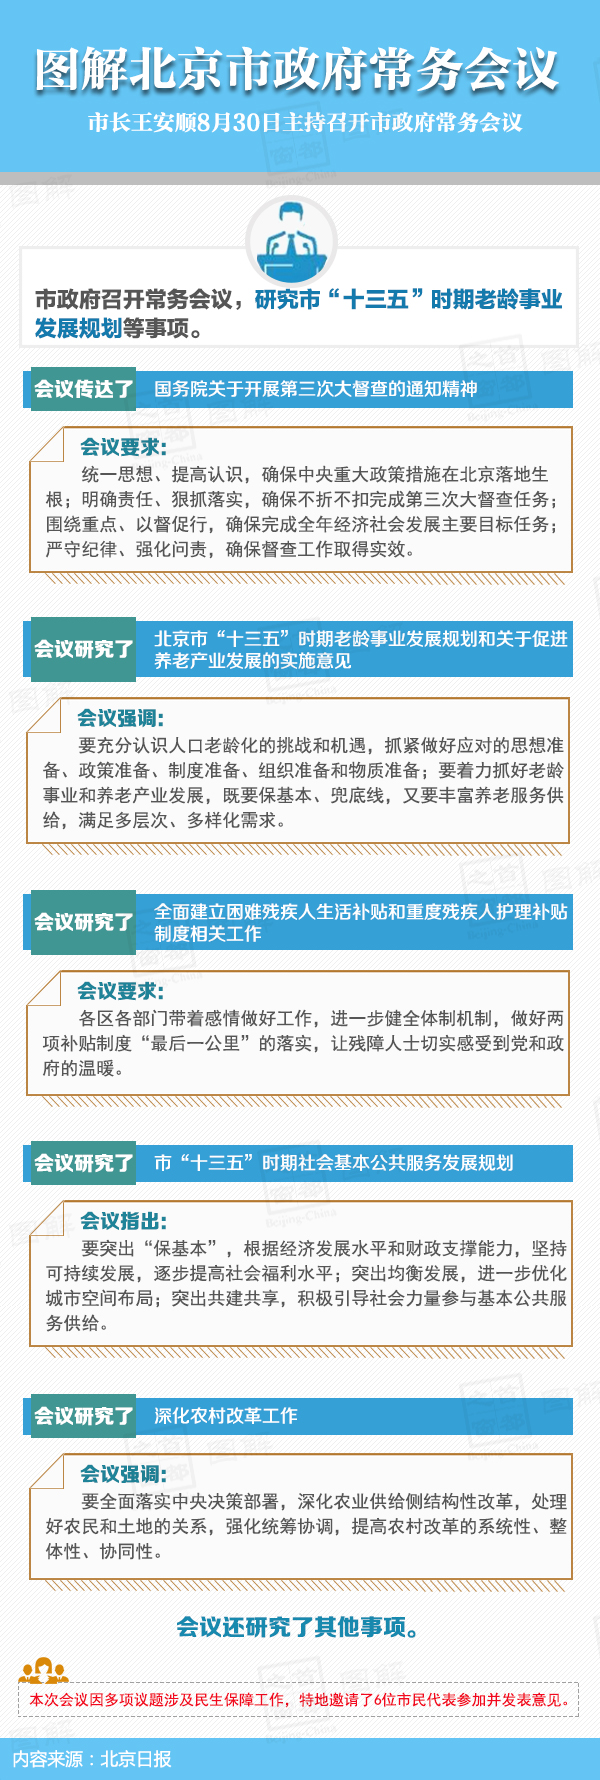 圖解2016年8月30日北京市政府常務會議